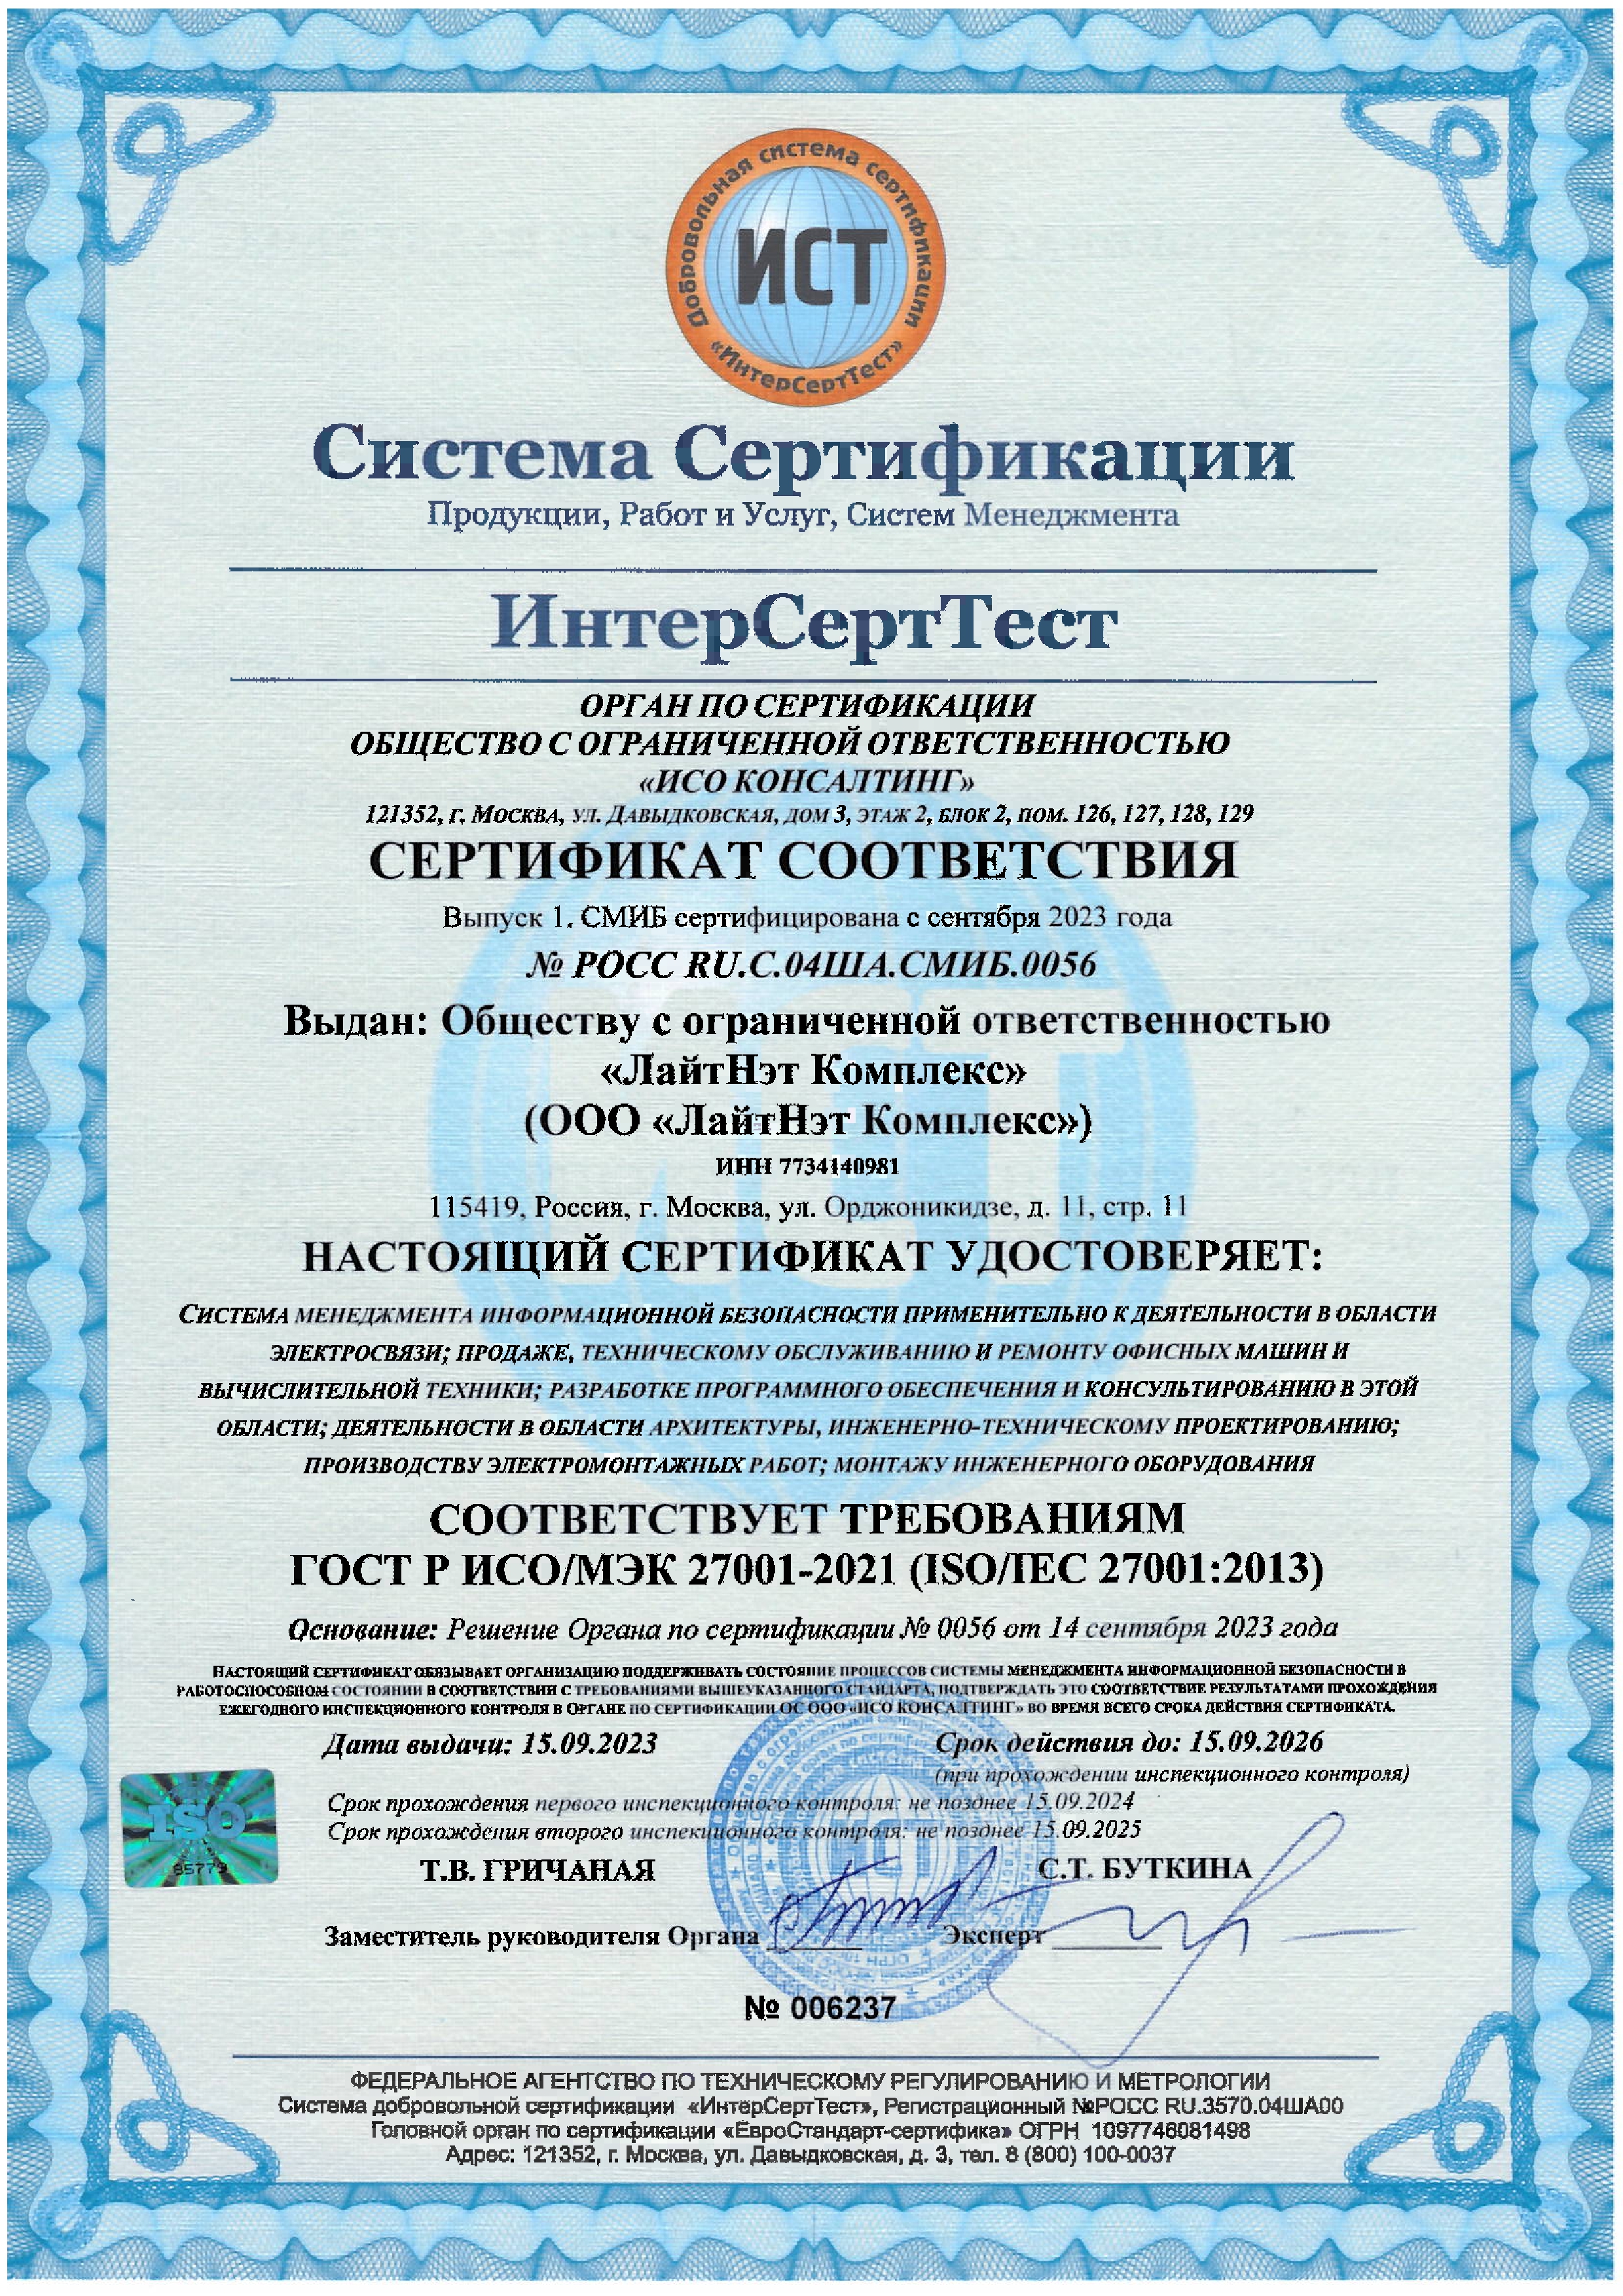 Сертификат соответствия системы менеджмента информационной безопасности стандарту ГОСТ Р ИСО/МЭК 27001-2021